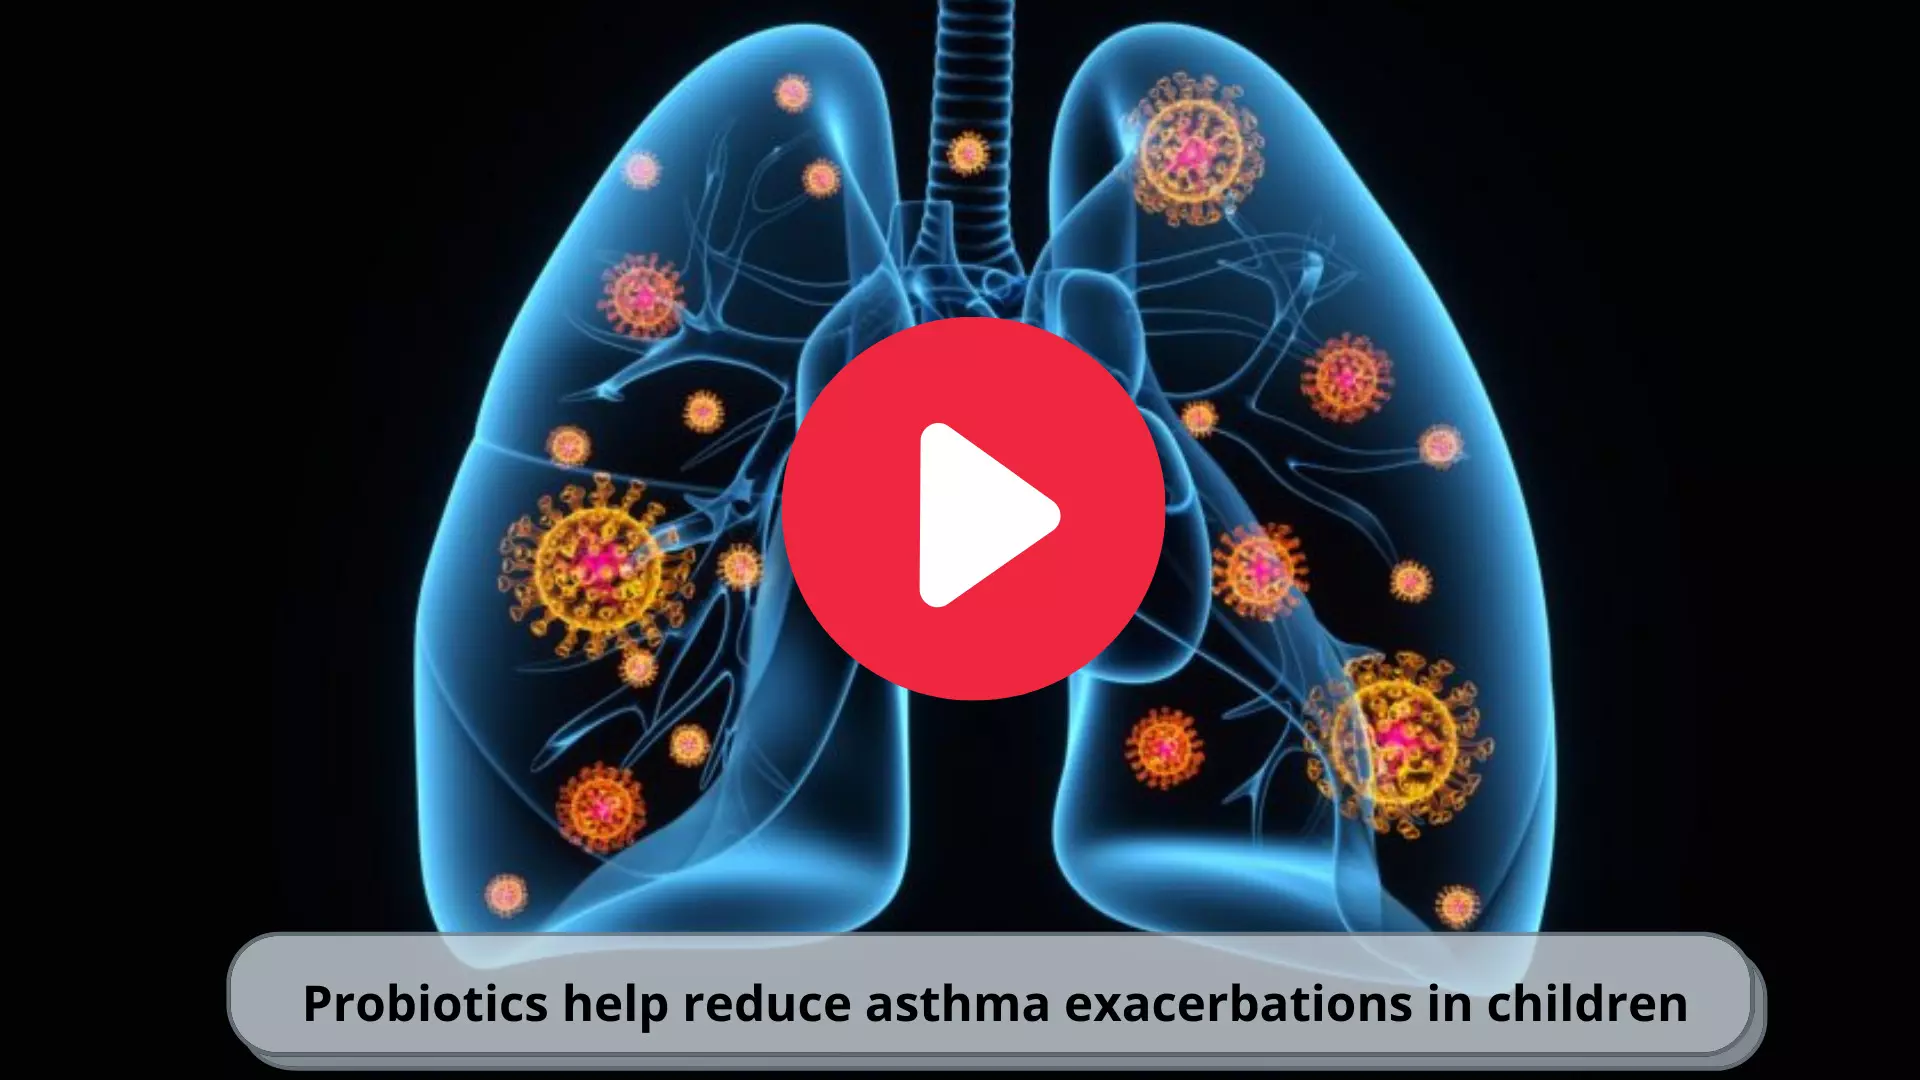 Probiotics effective in reducing asthma exacerbations in children